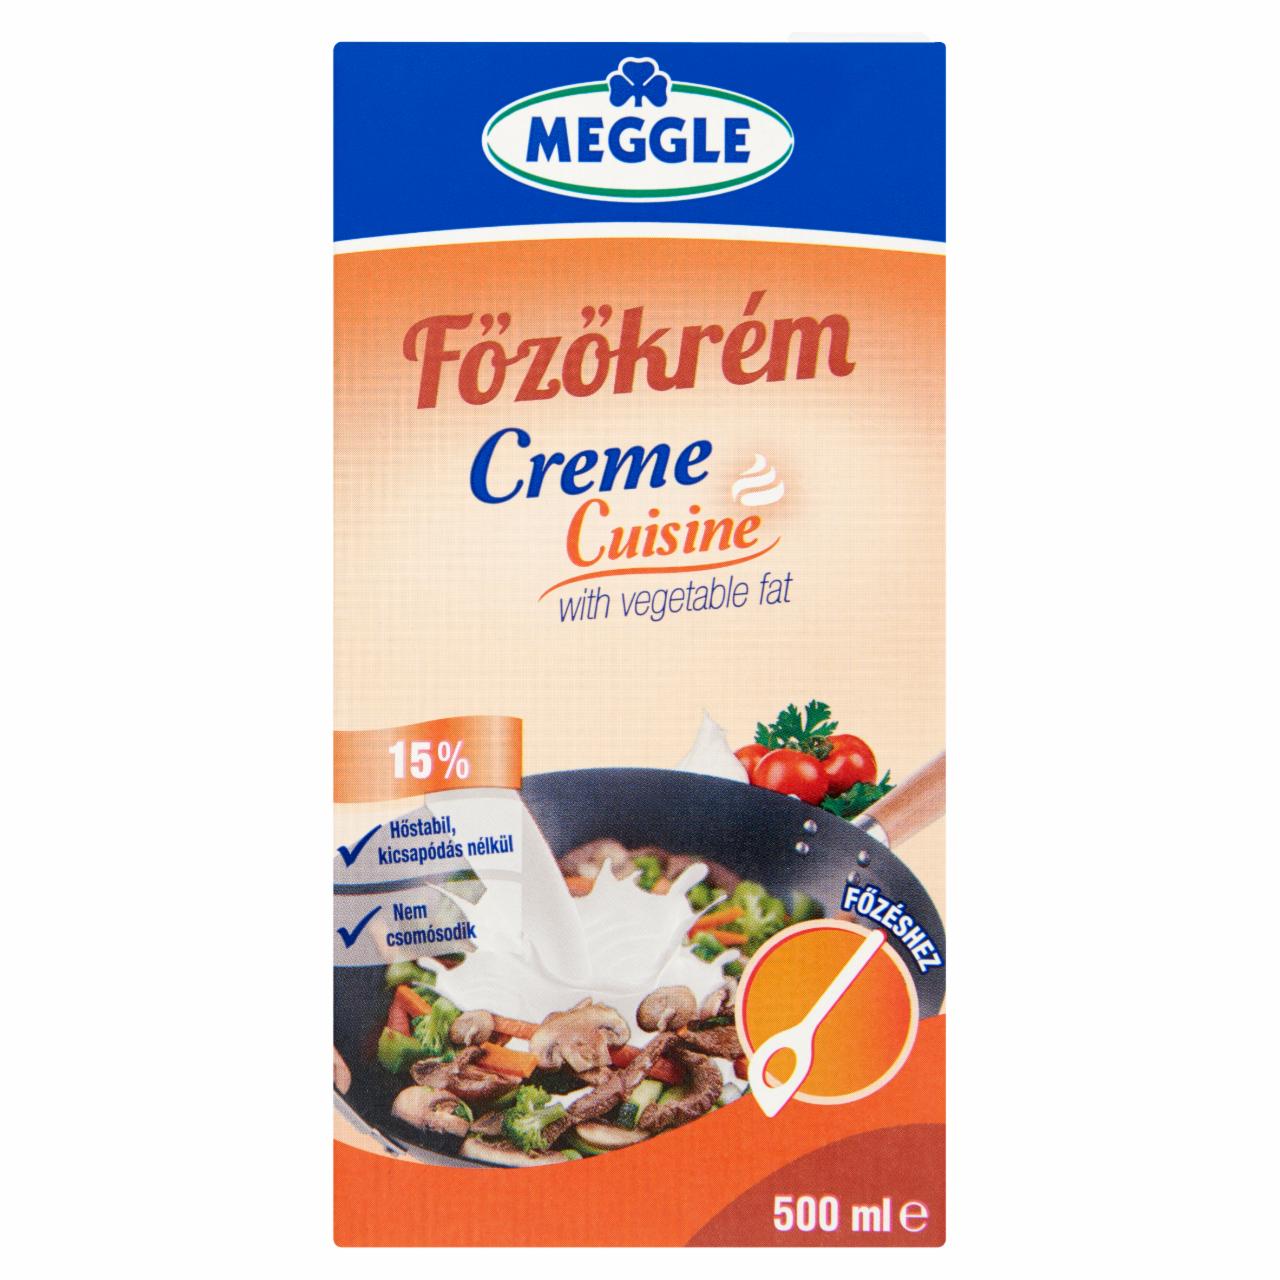 Képek - Meggle Creme Cuisine UHT főzőkrém növényi zsírral 15% 500 ml